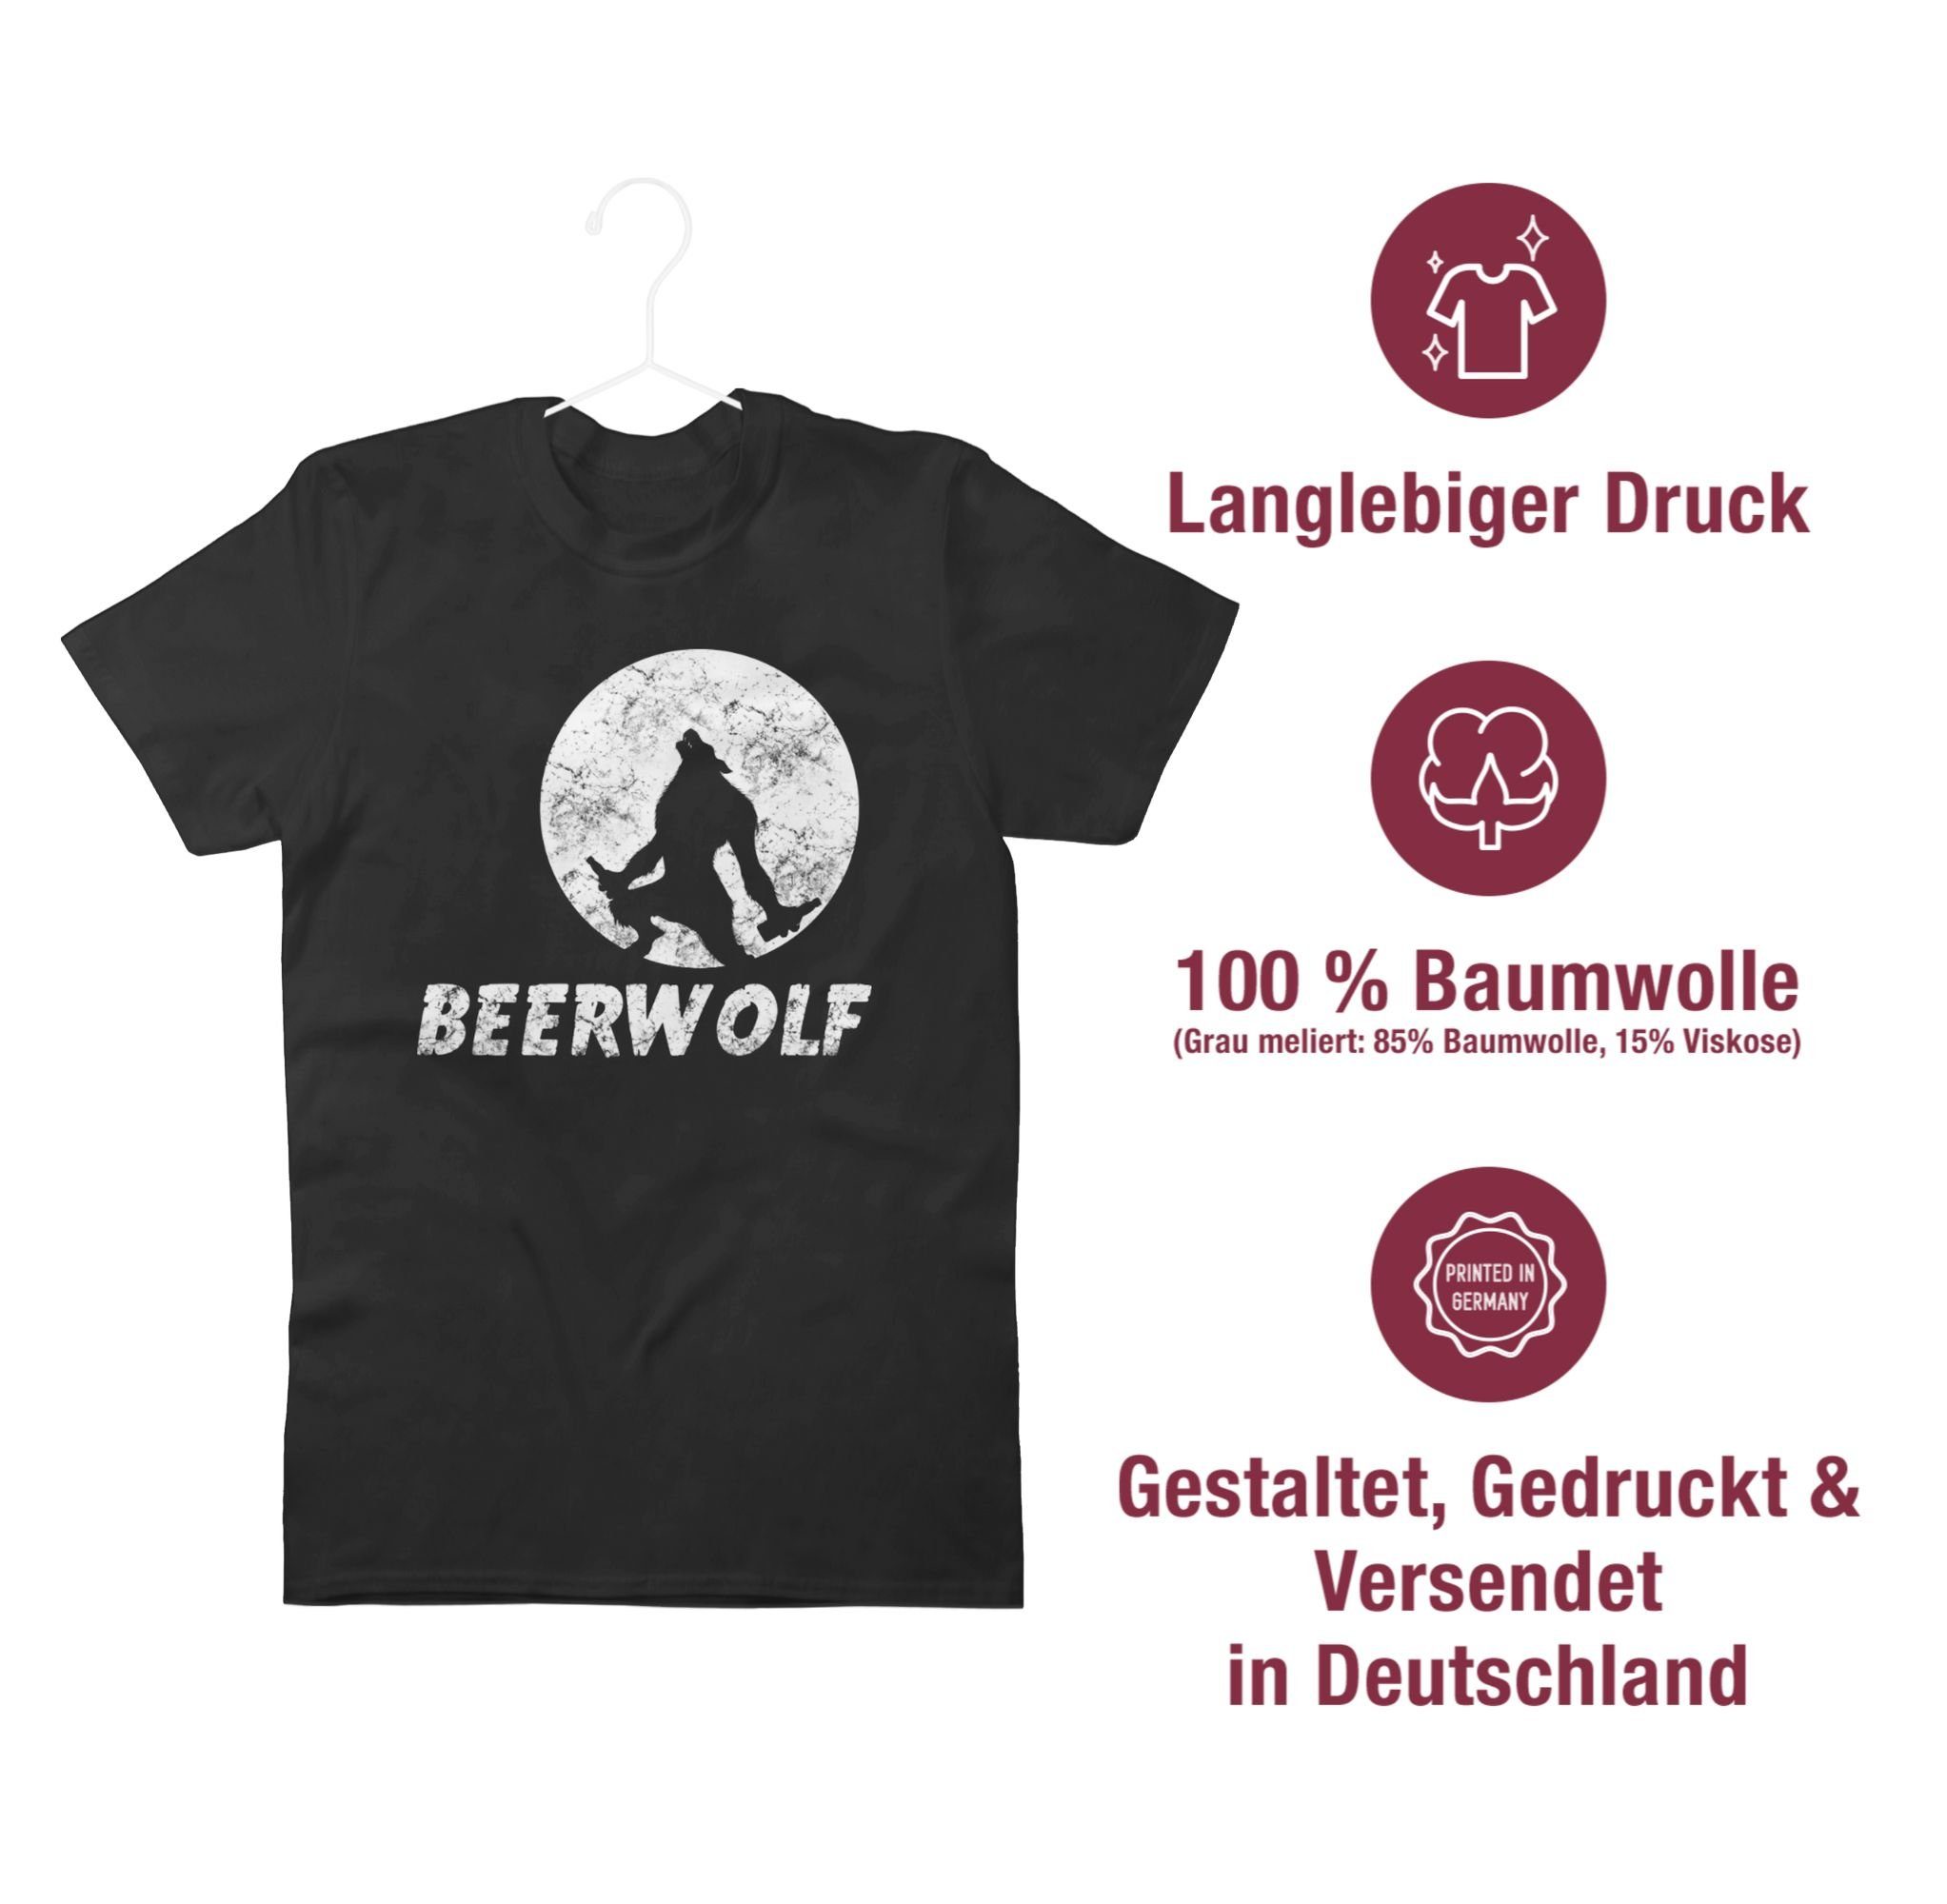 Statement Sprüche Shirtracer T-Shirt Schwarz 2 Beerwolf